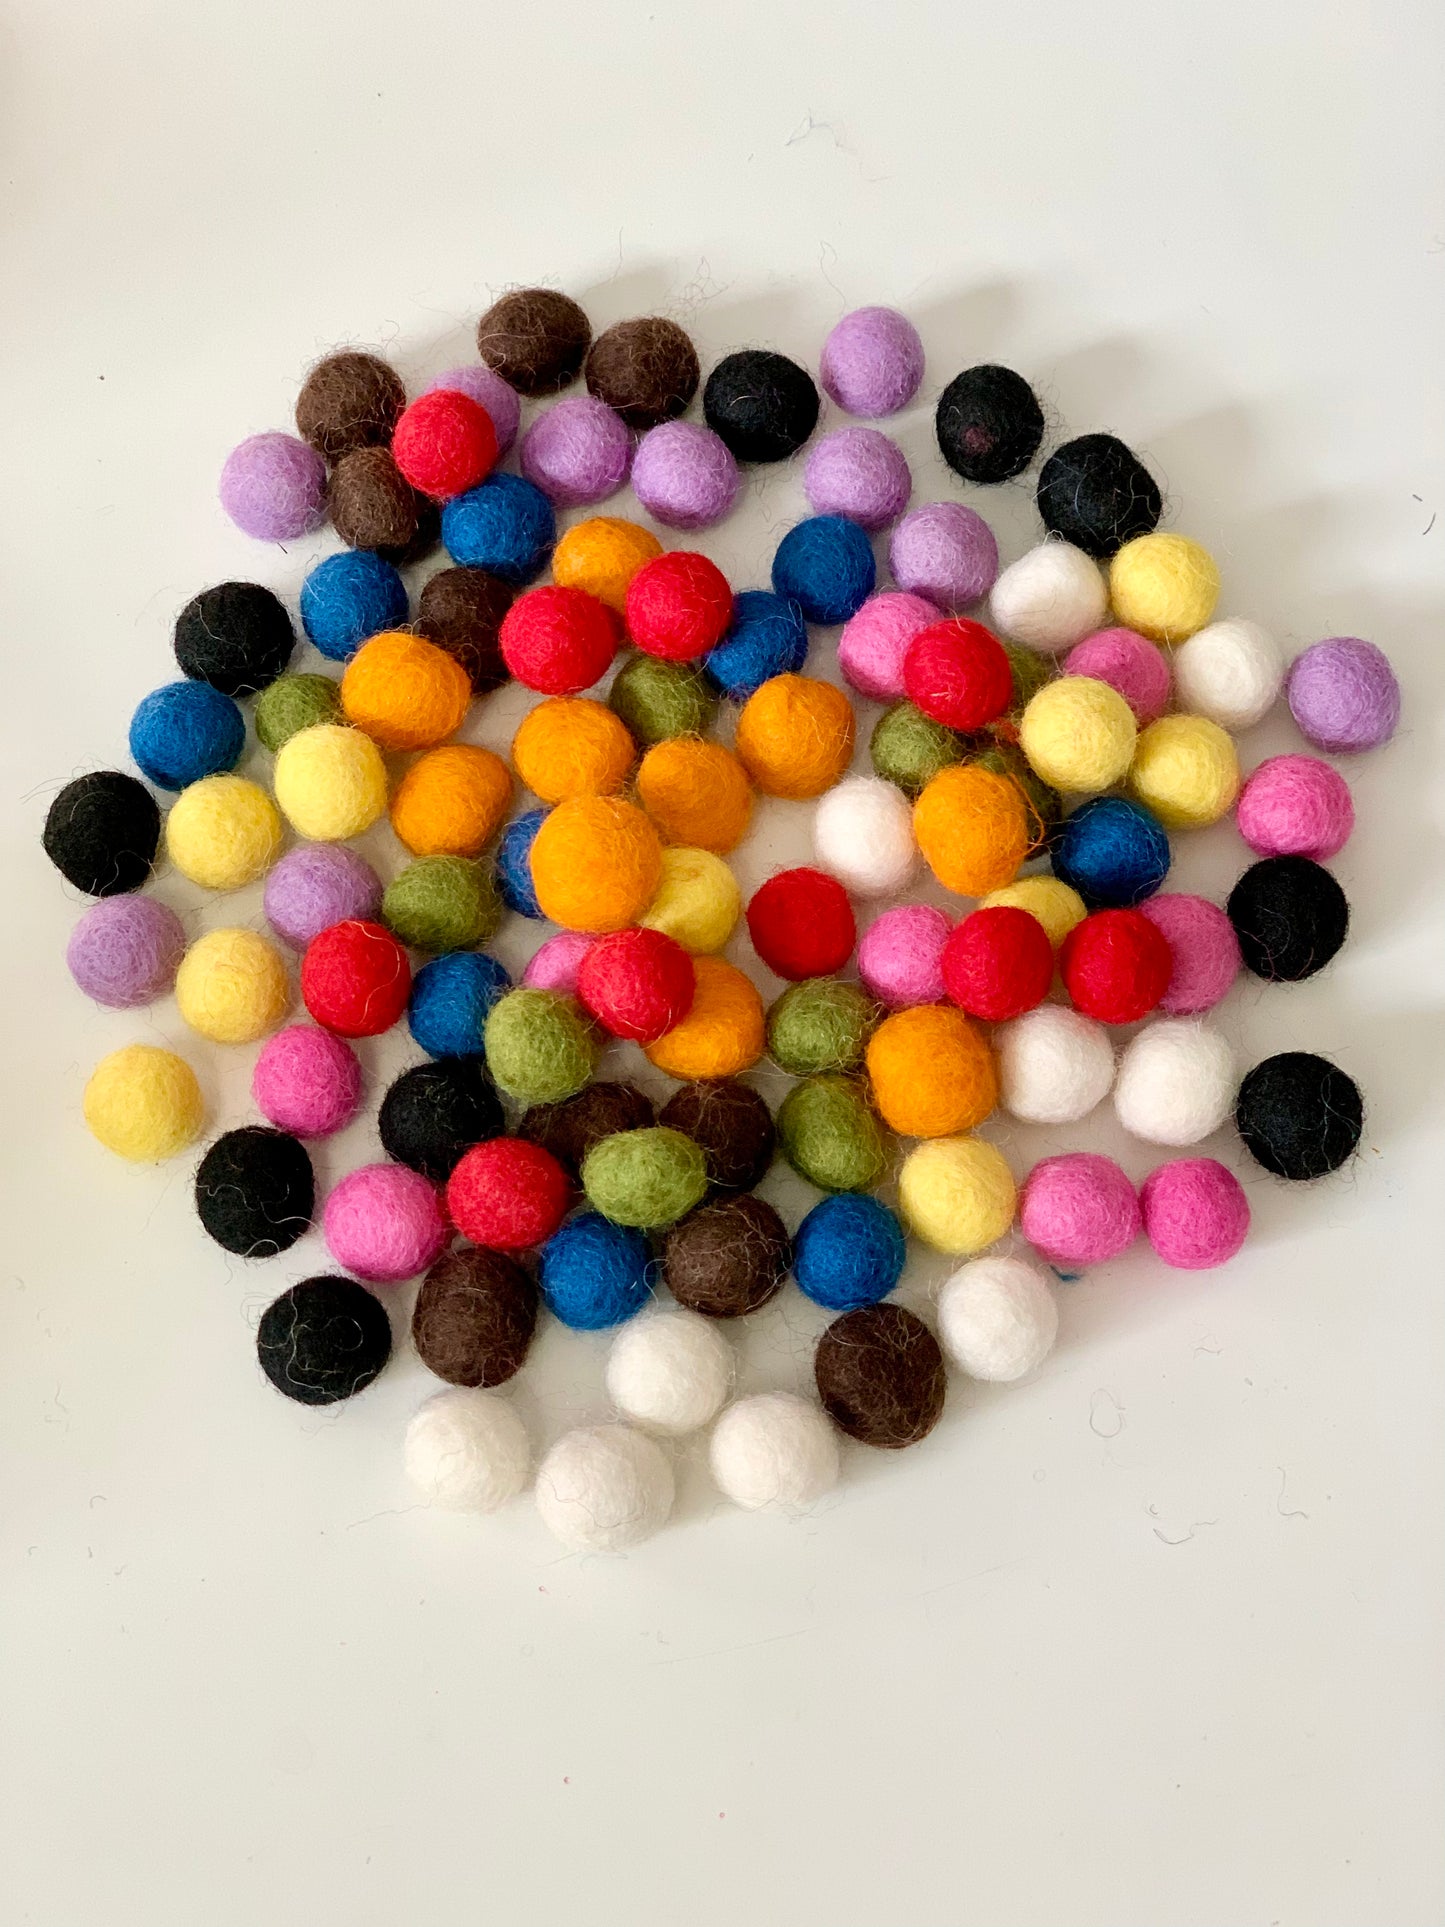 100 1.5 cm Rainbow Felt Balls